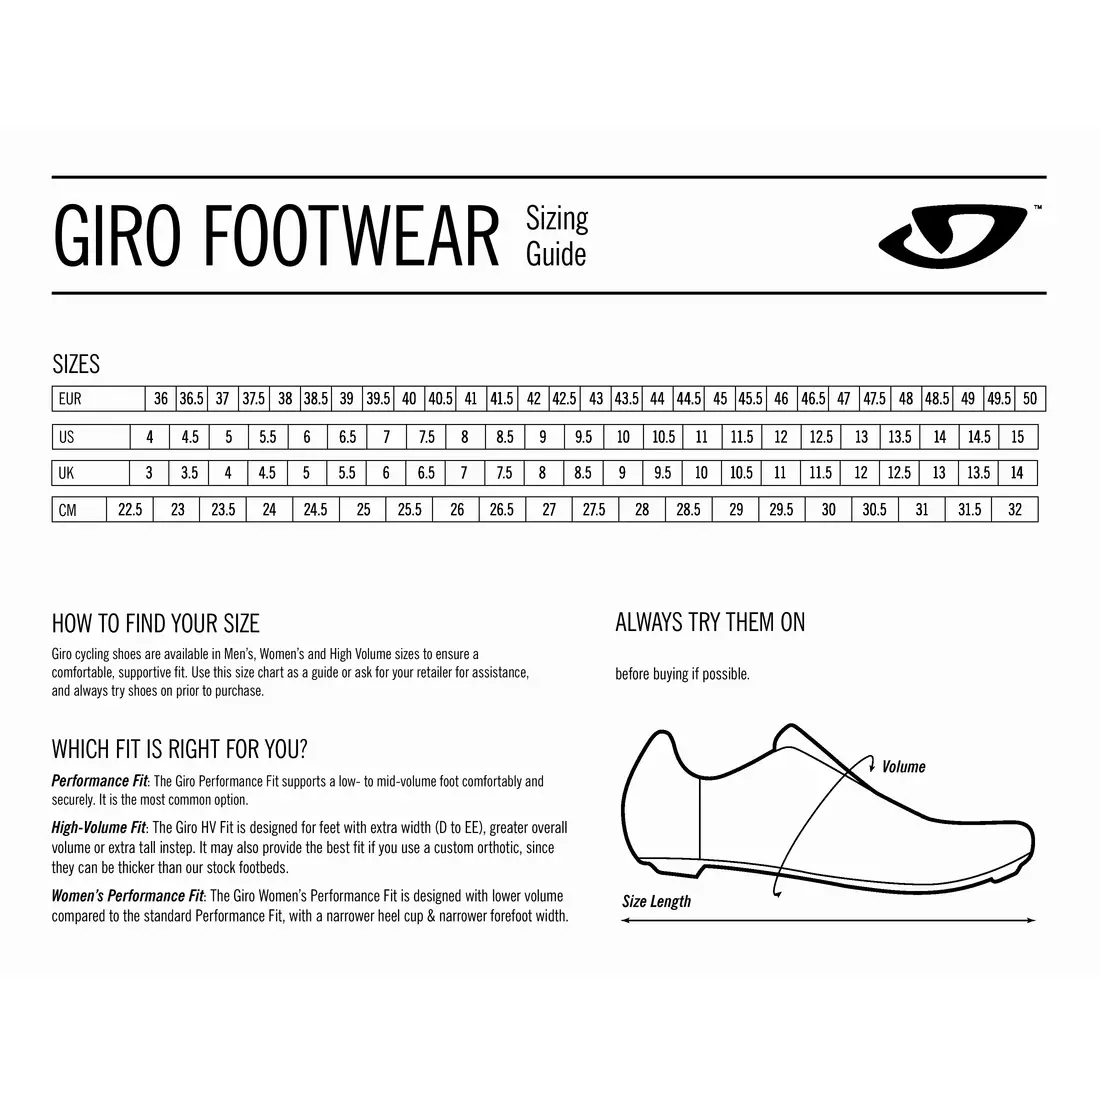 GIRO PRIVATEER R - Pantofi de ciclism MTB, gri și roșu